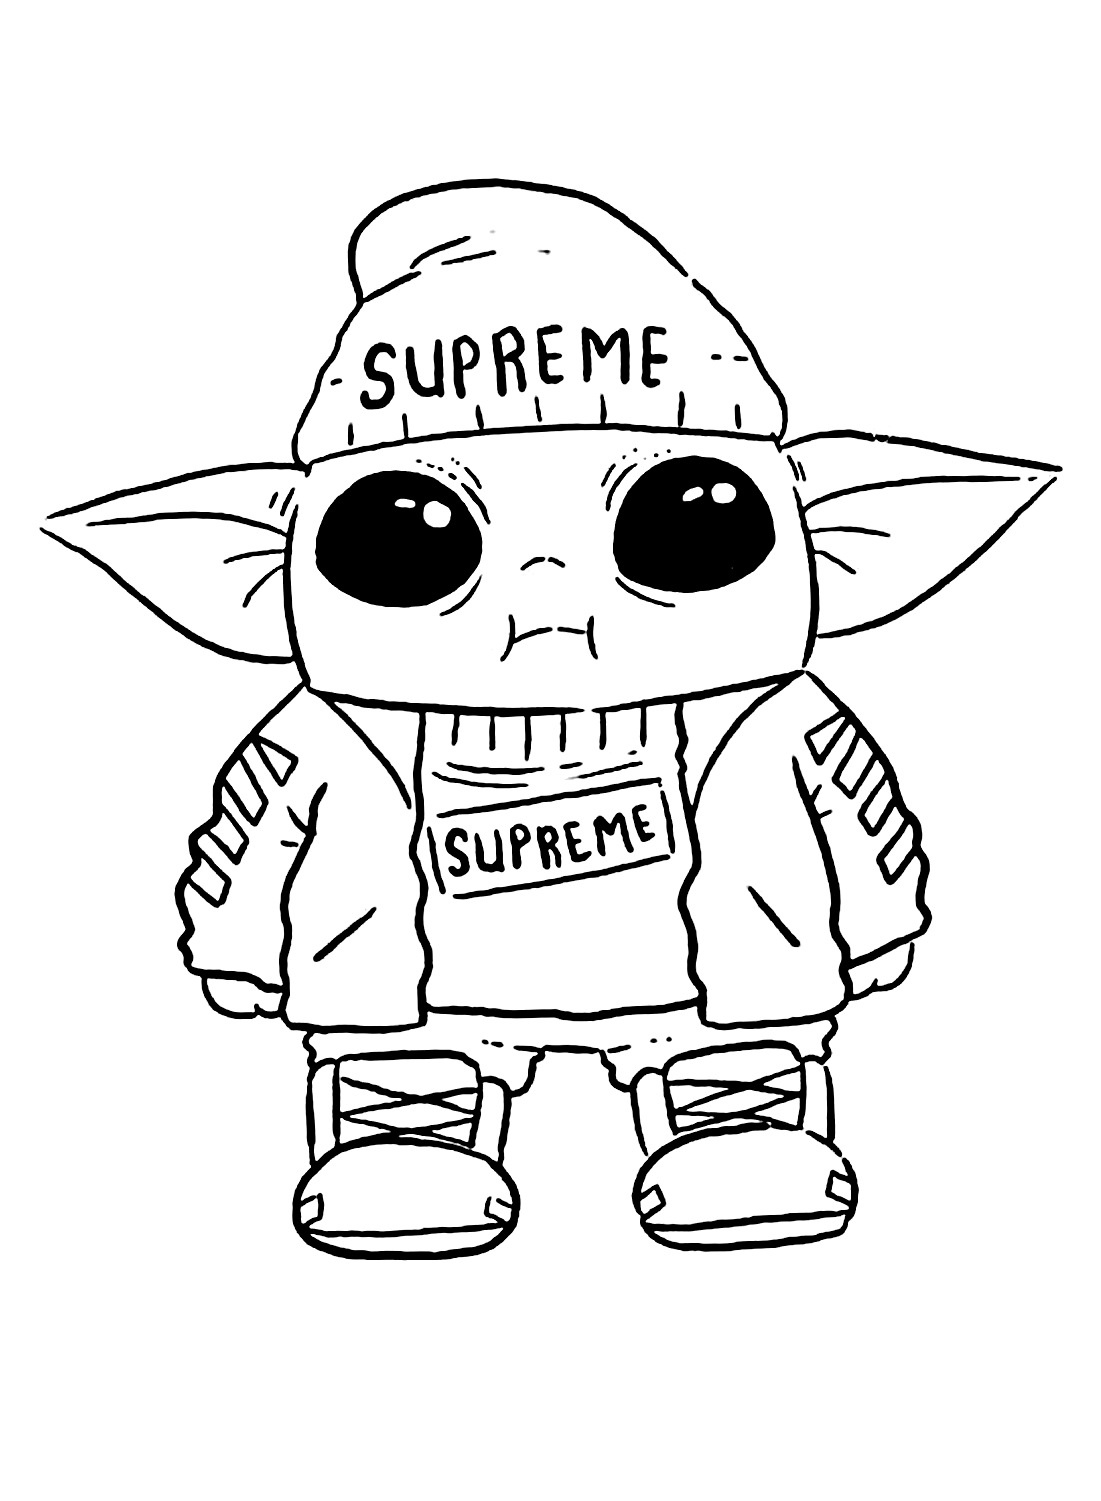 Fantastica immagine da colorare di Baby Yoda